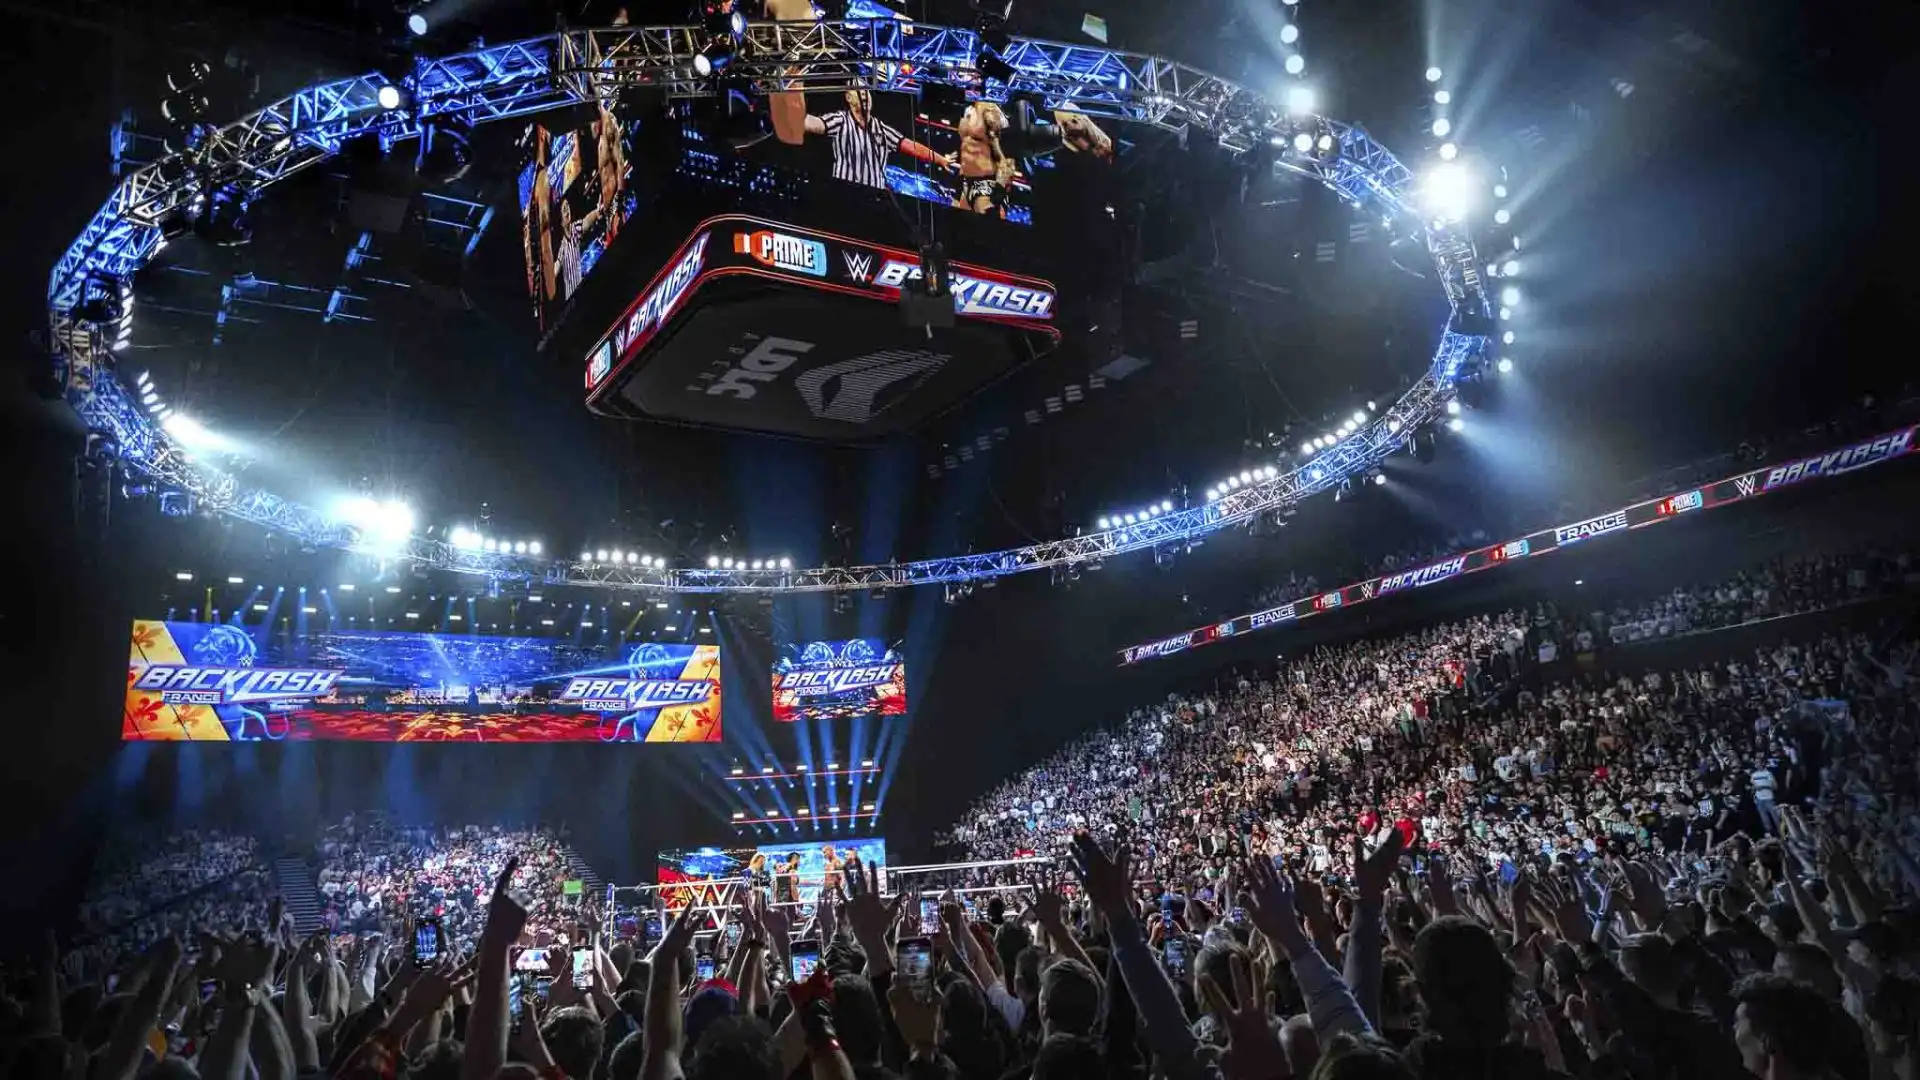 La notizia più importante però è che la WWE sta davvero pensando di organizzare un Premium Live Event in Italia.